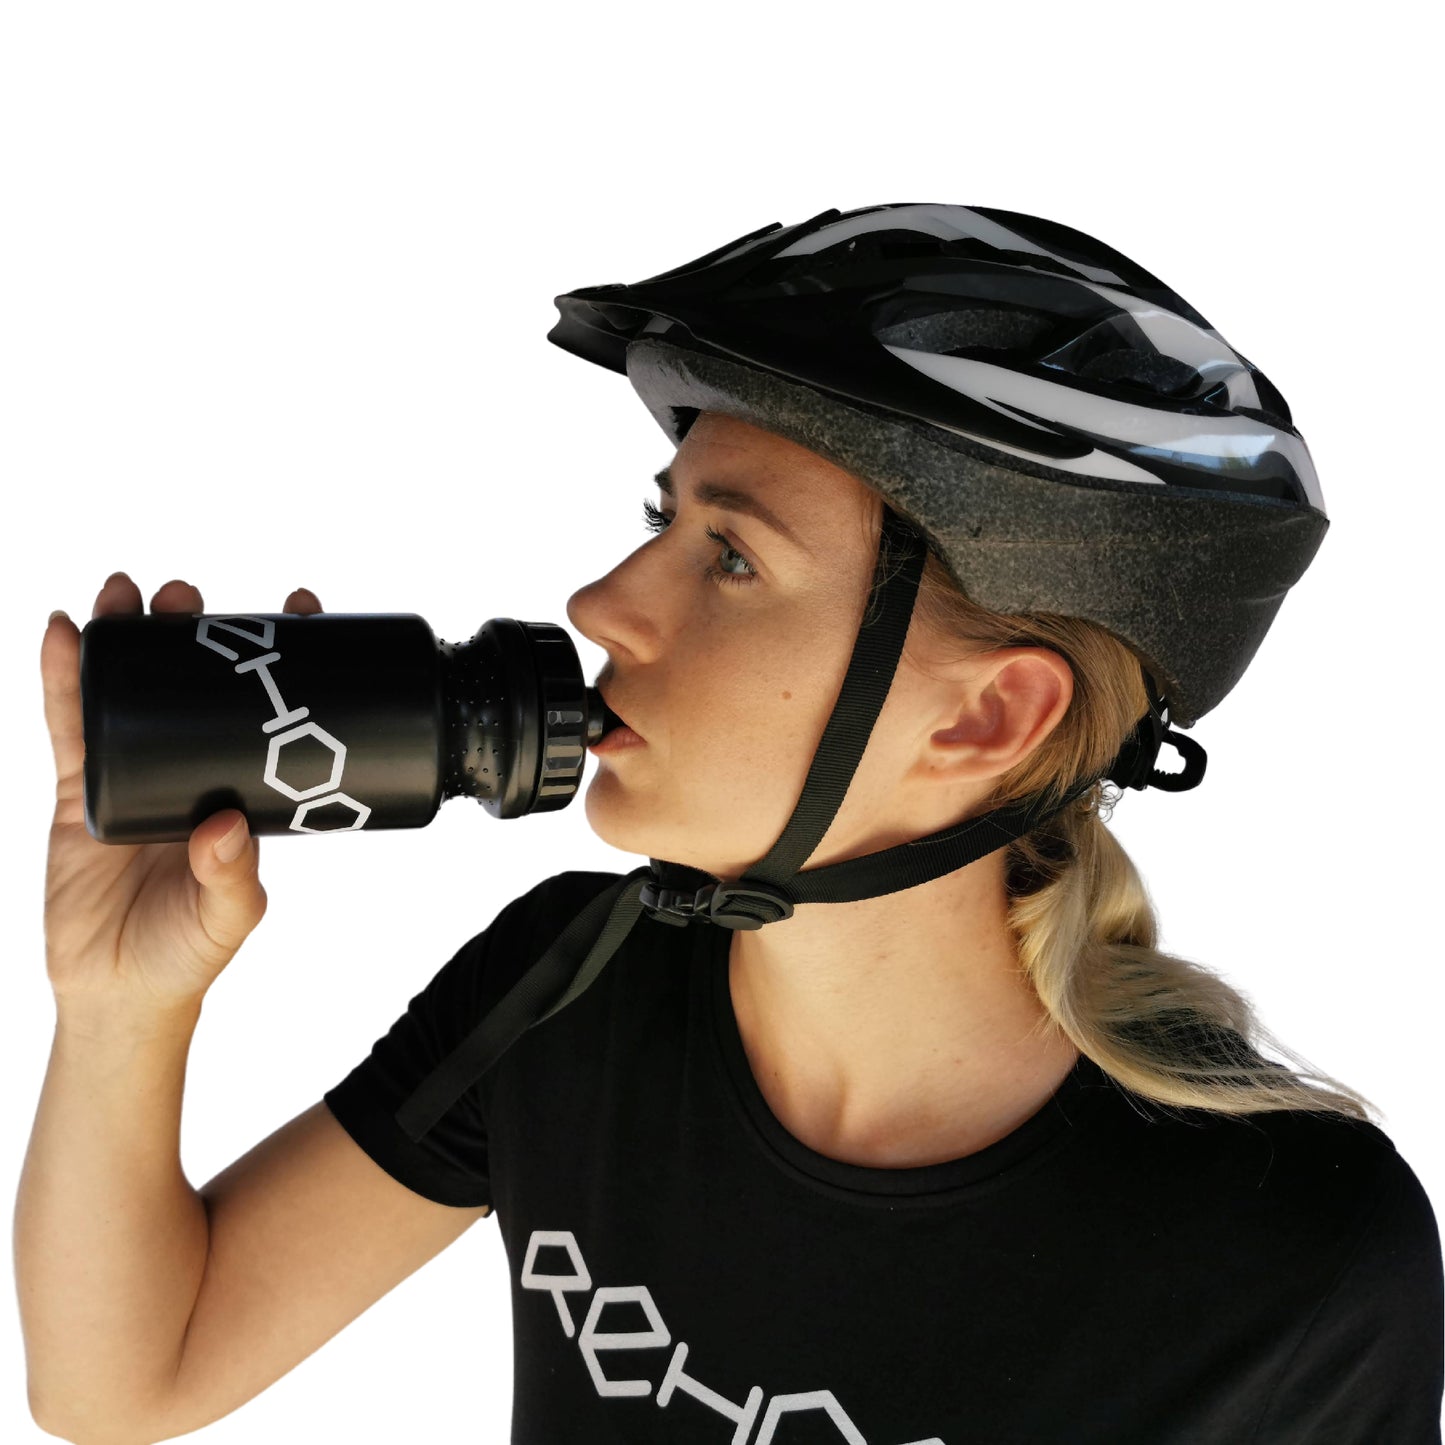 Rehook Cycling Water Bottle 500ml